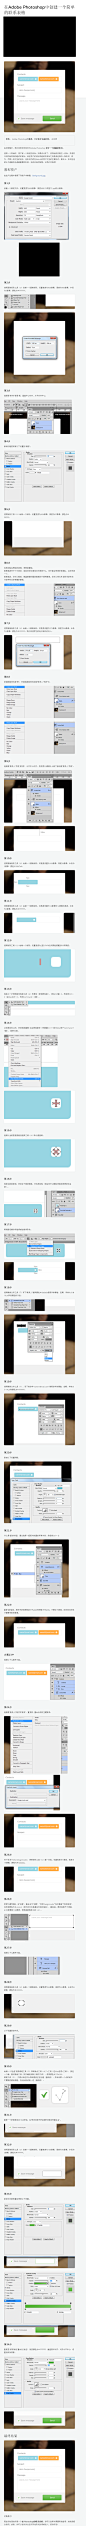 创建一个简单的联系表格在Adobe Photoshop - Designmodo